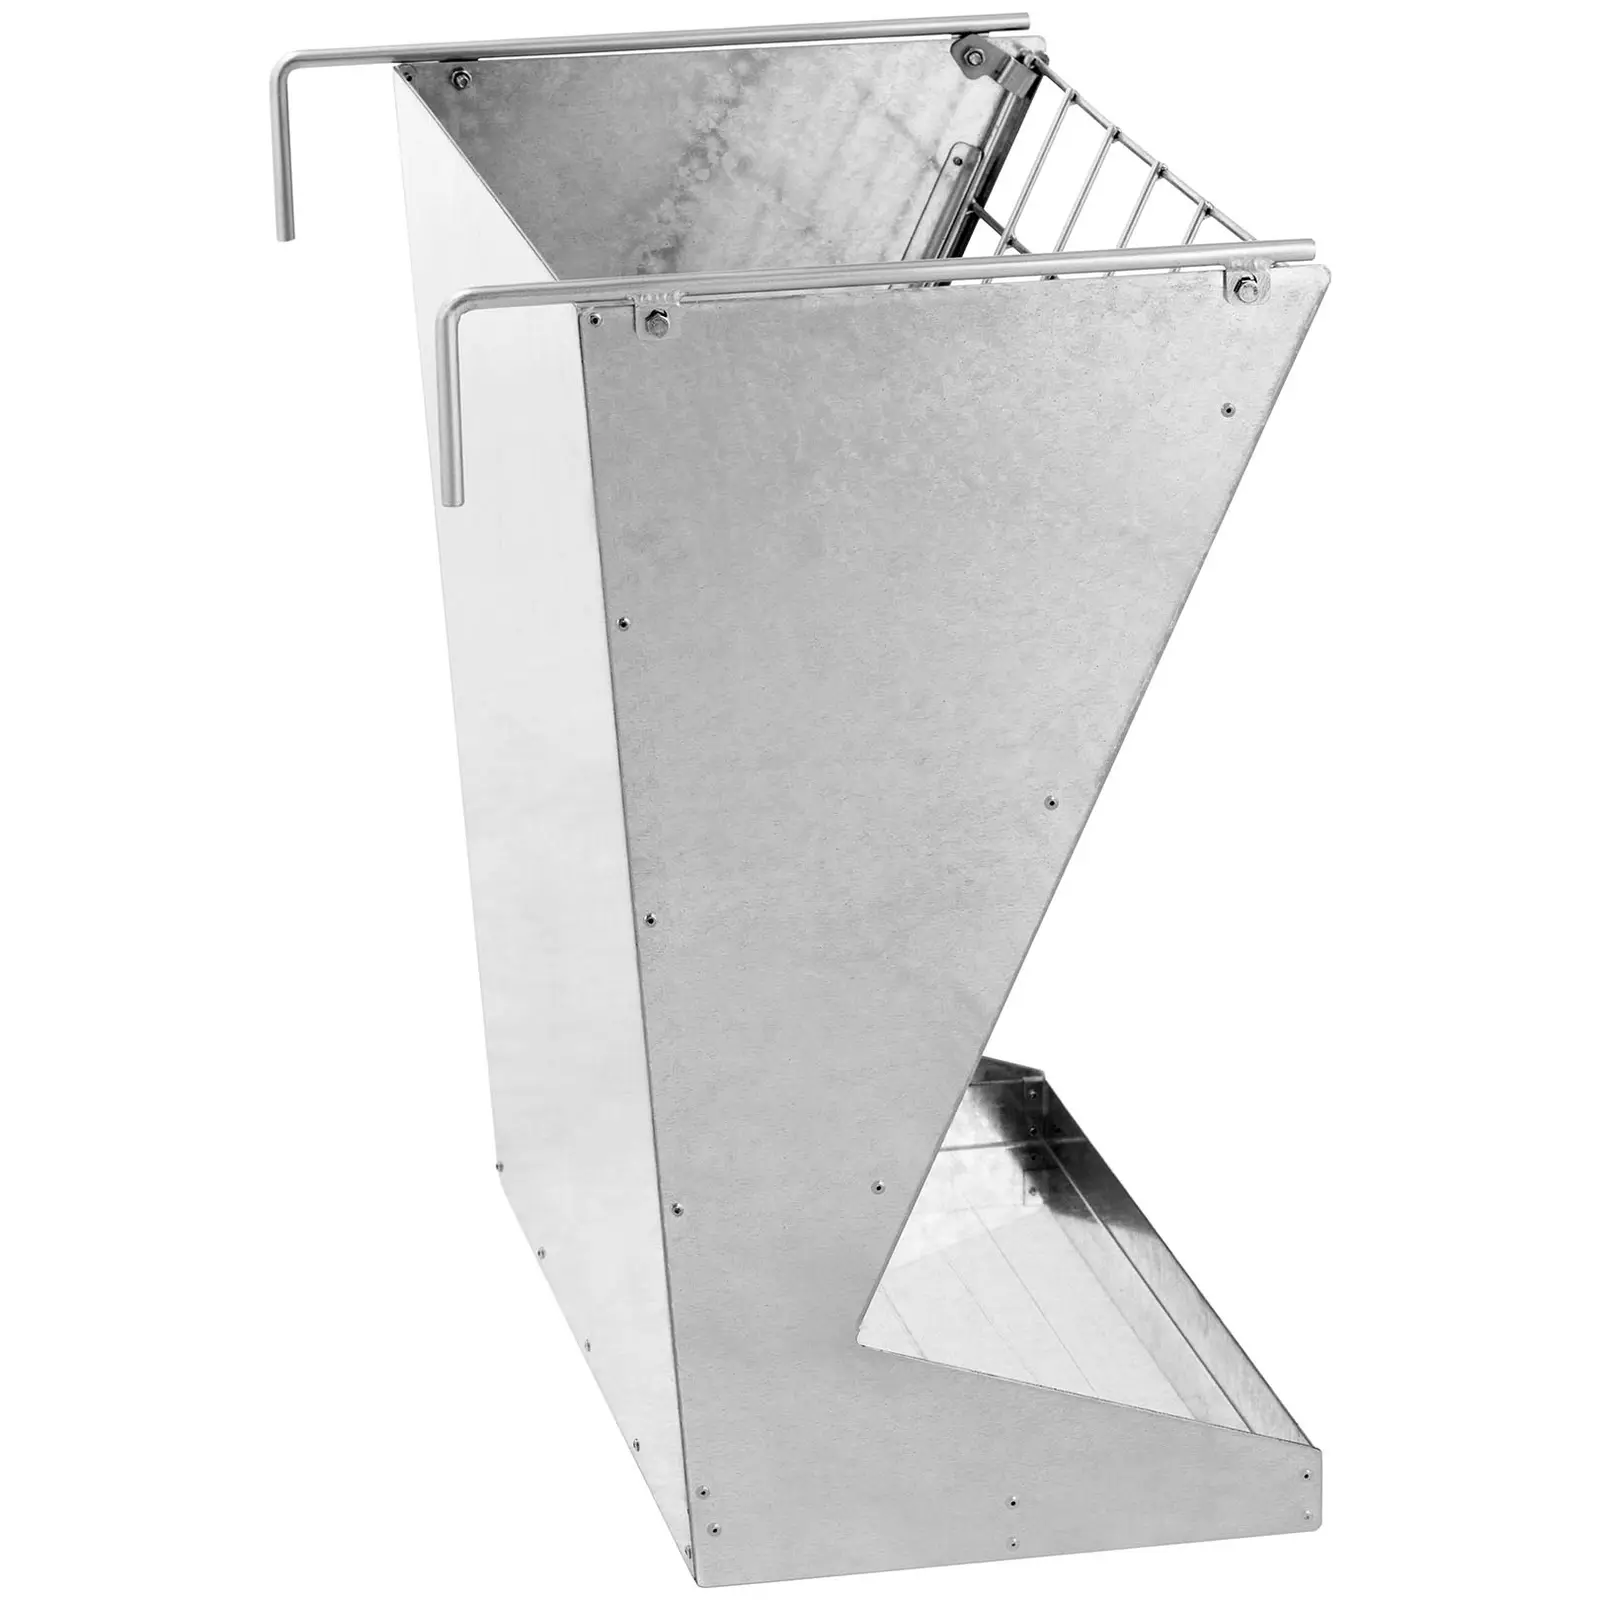 Forautomat – For geiter og sauer – {{net_length}} x 39.5 x 60 cm